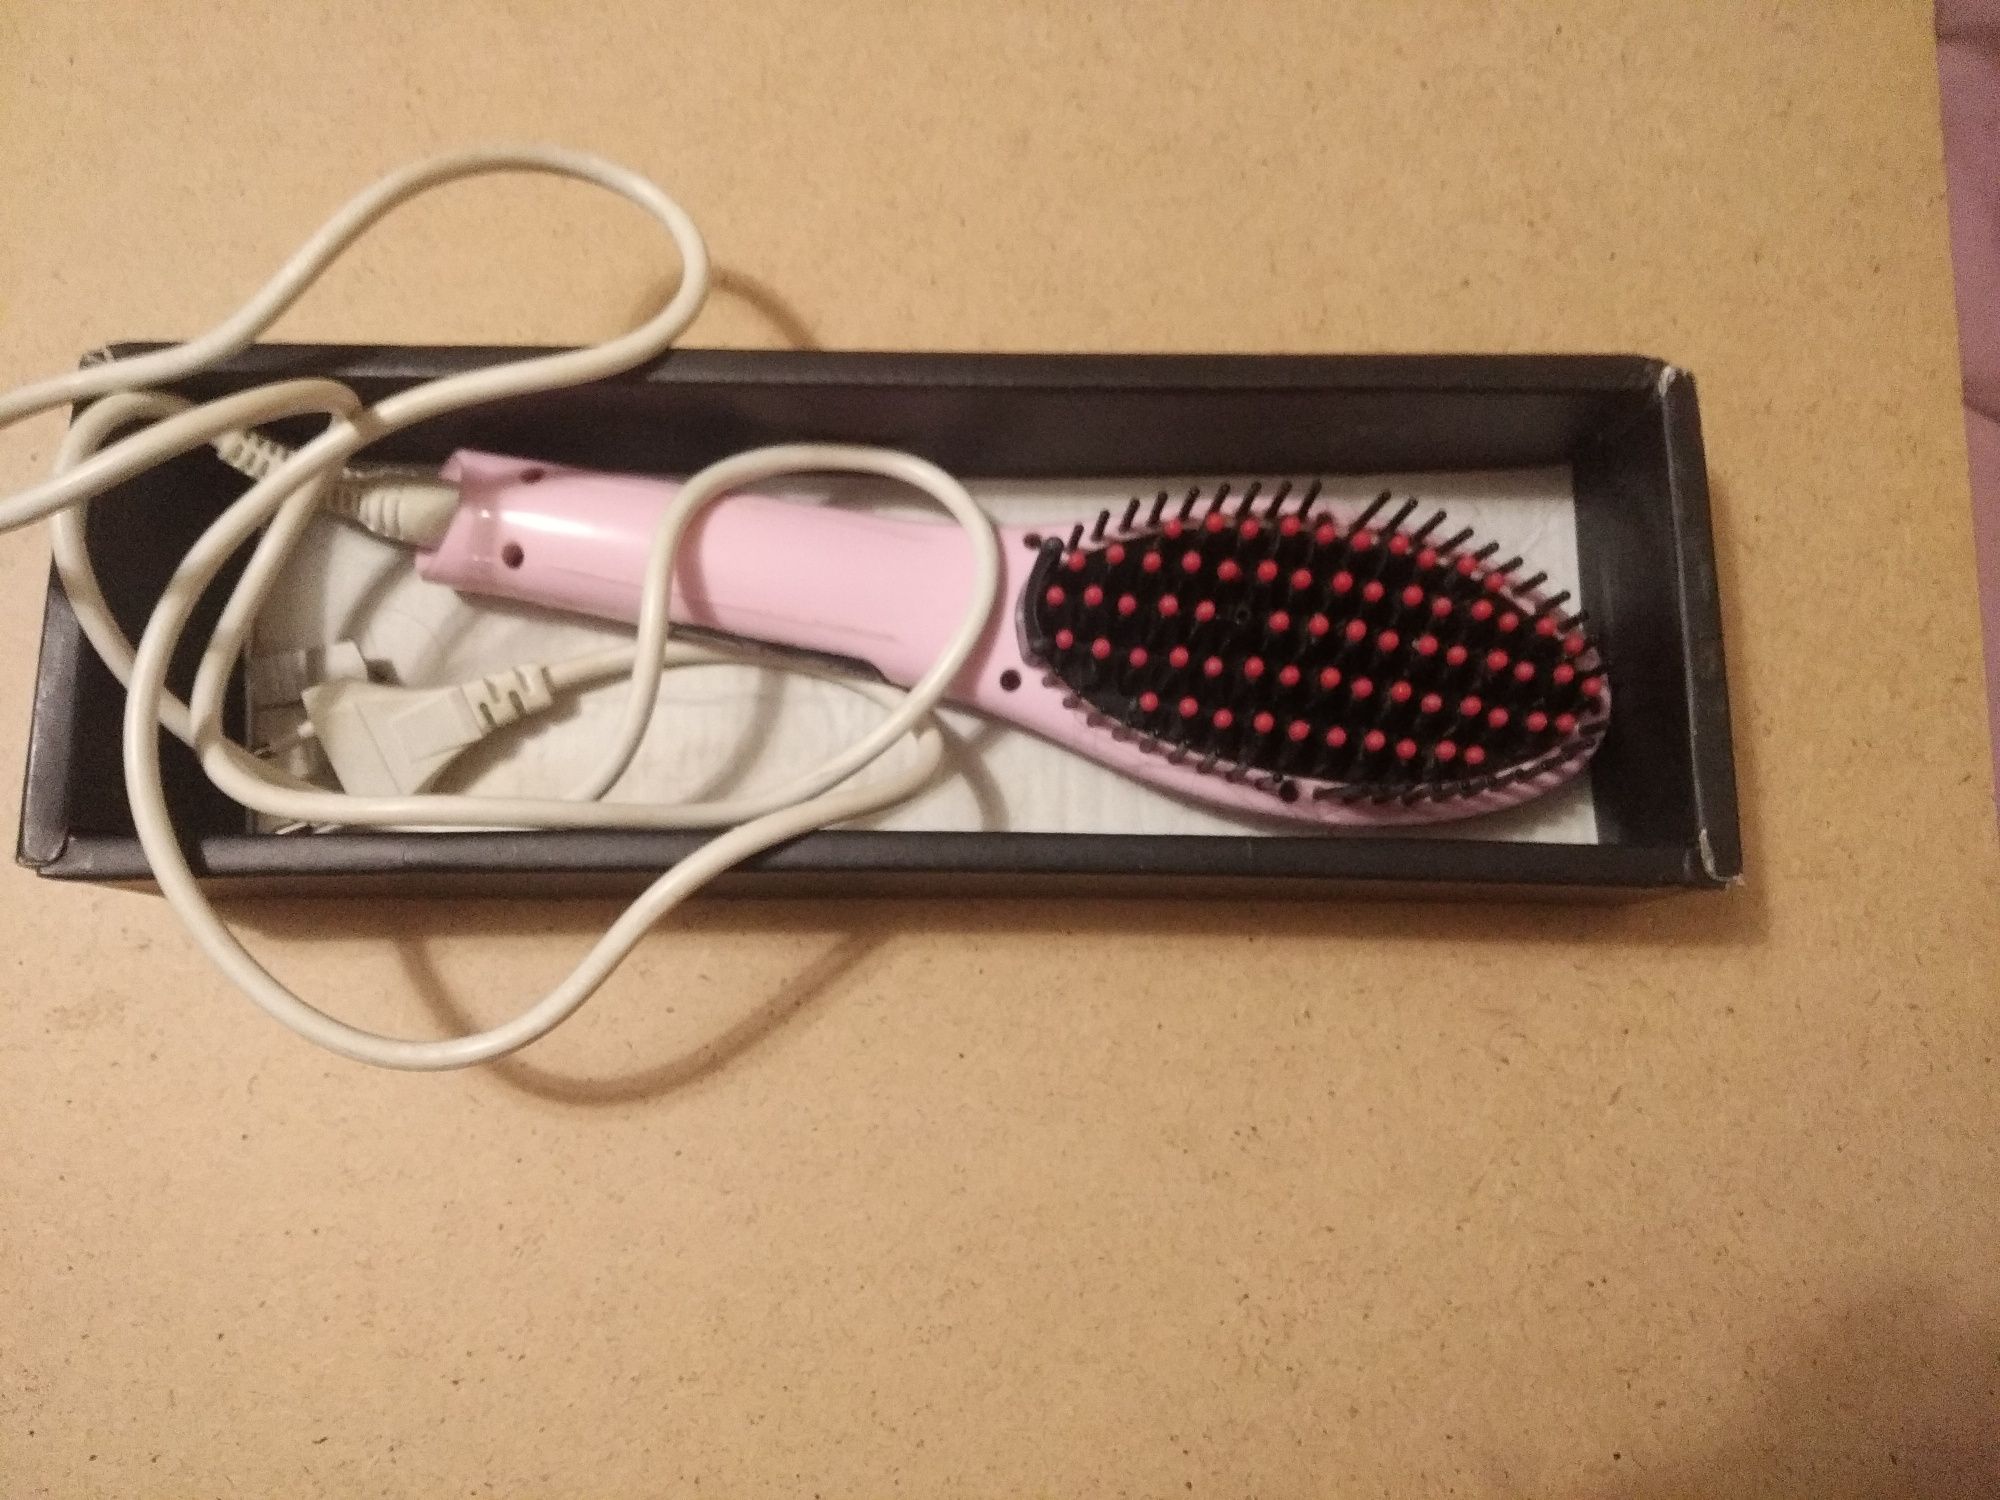 Электрическая расческа-выпрямитель Fast Hair Straightener HQT-906